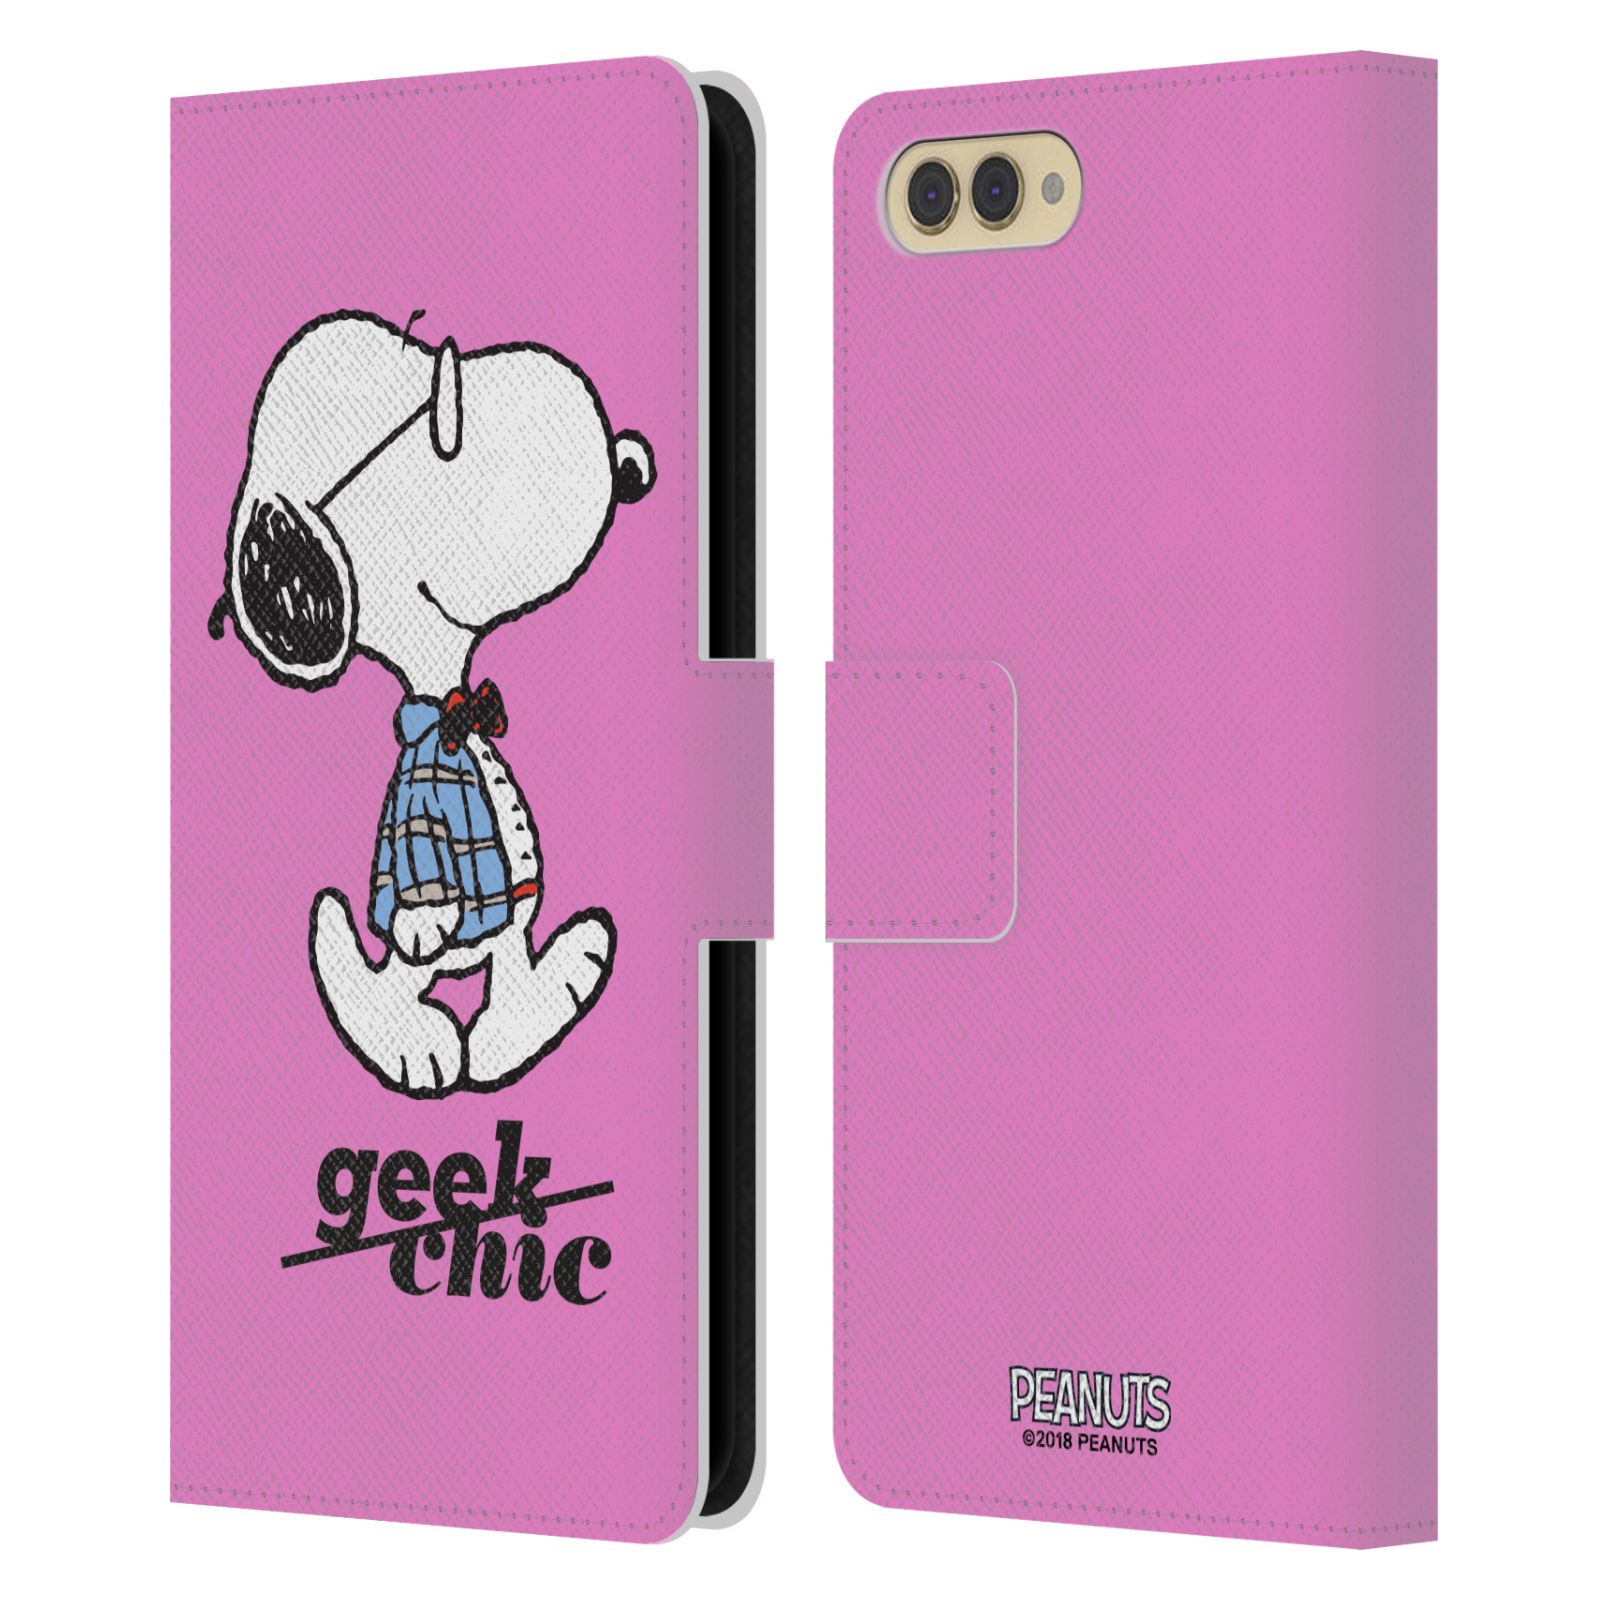 Pouzdro na mobil Honor  View 10 / V10 - Head Case - Peanuts - růžový pejsek snoopy nerd